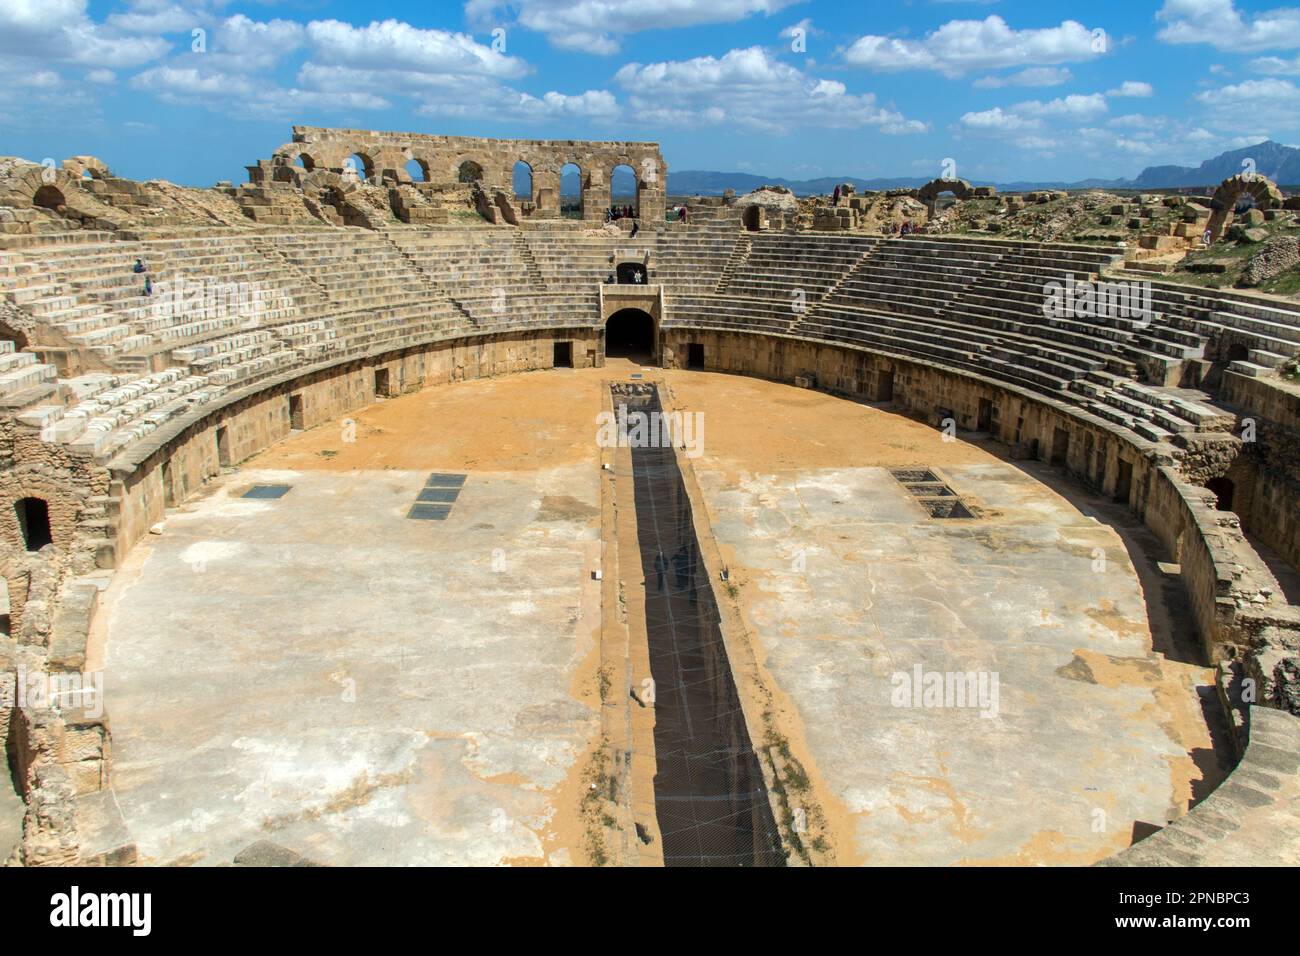 L'amphithéâtre Uthina : une impressionnante structure romaine en Tunisie Banque D'Images